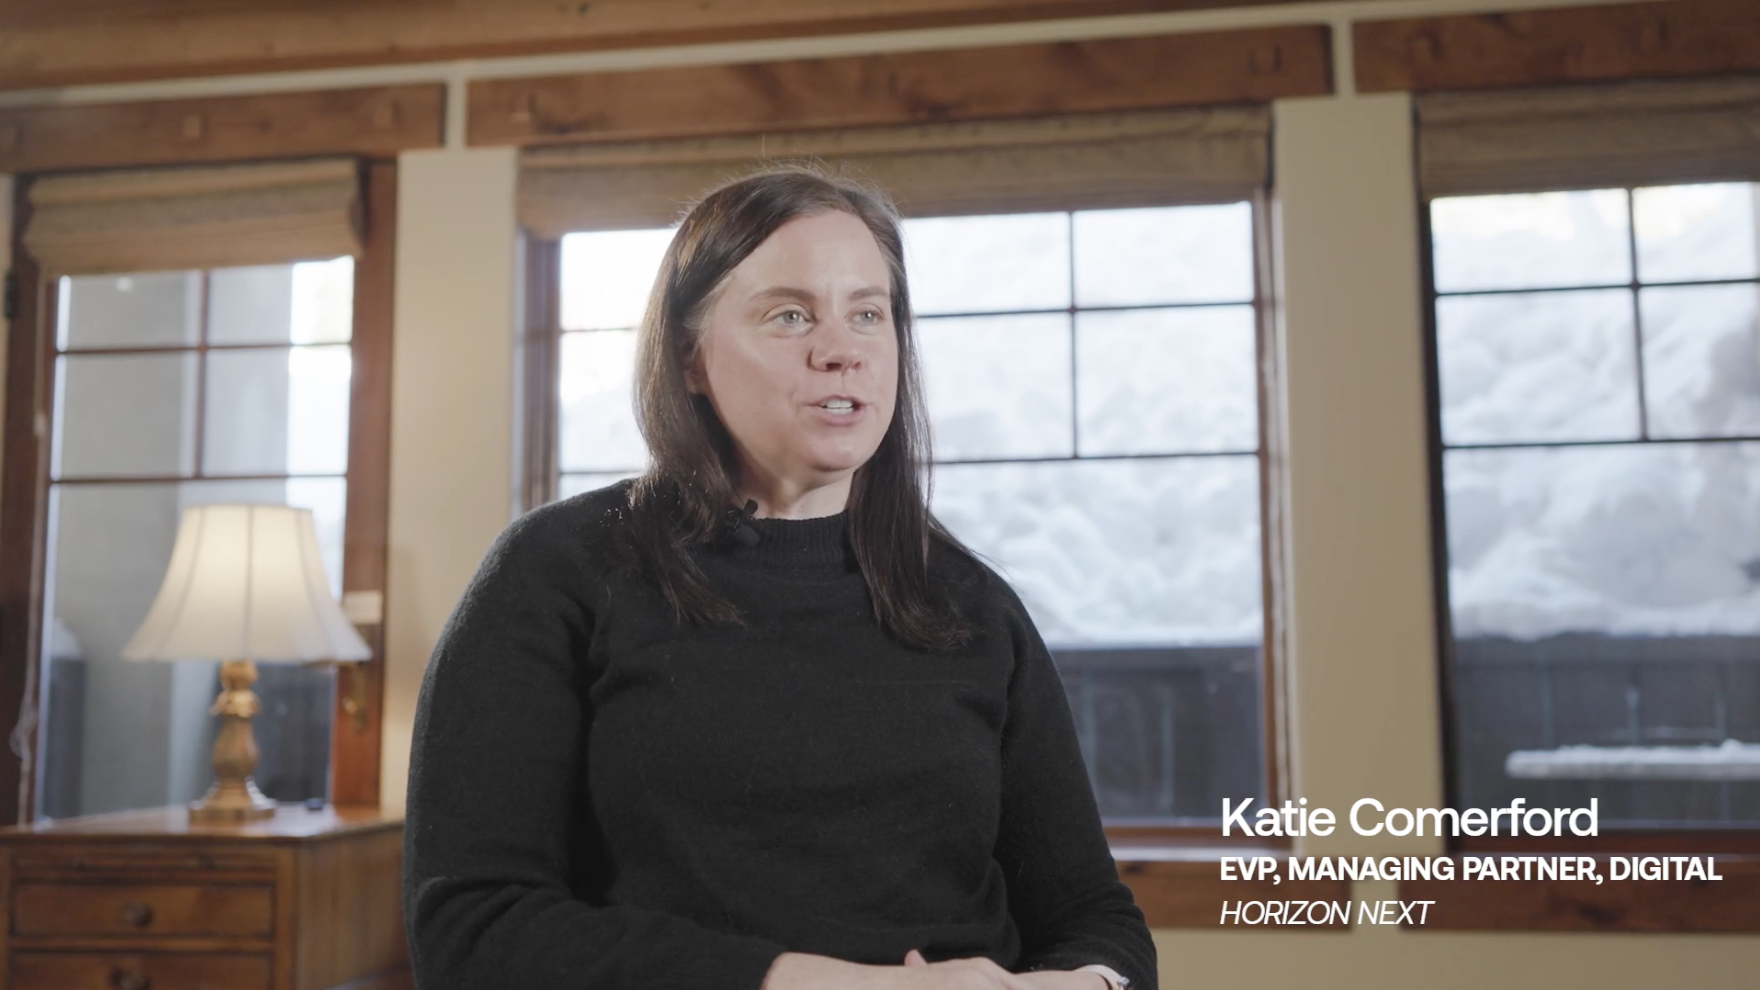 Client Testimonial: Katie Comerford at Horizon Next